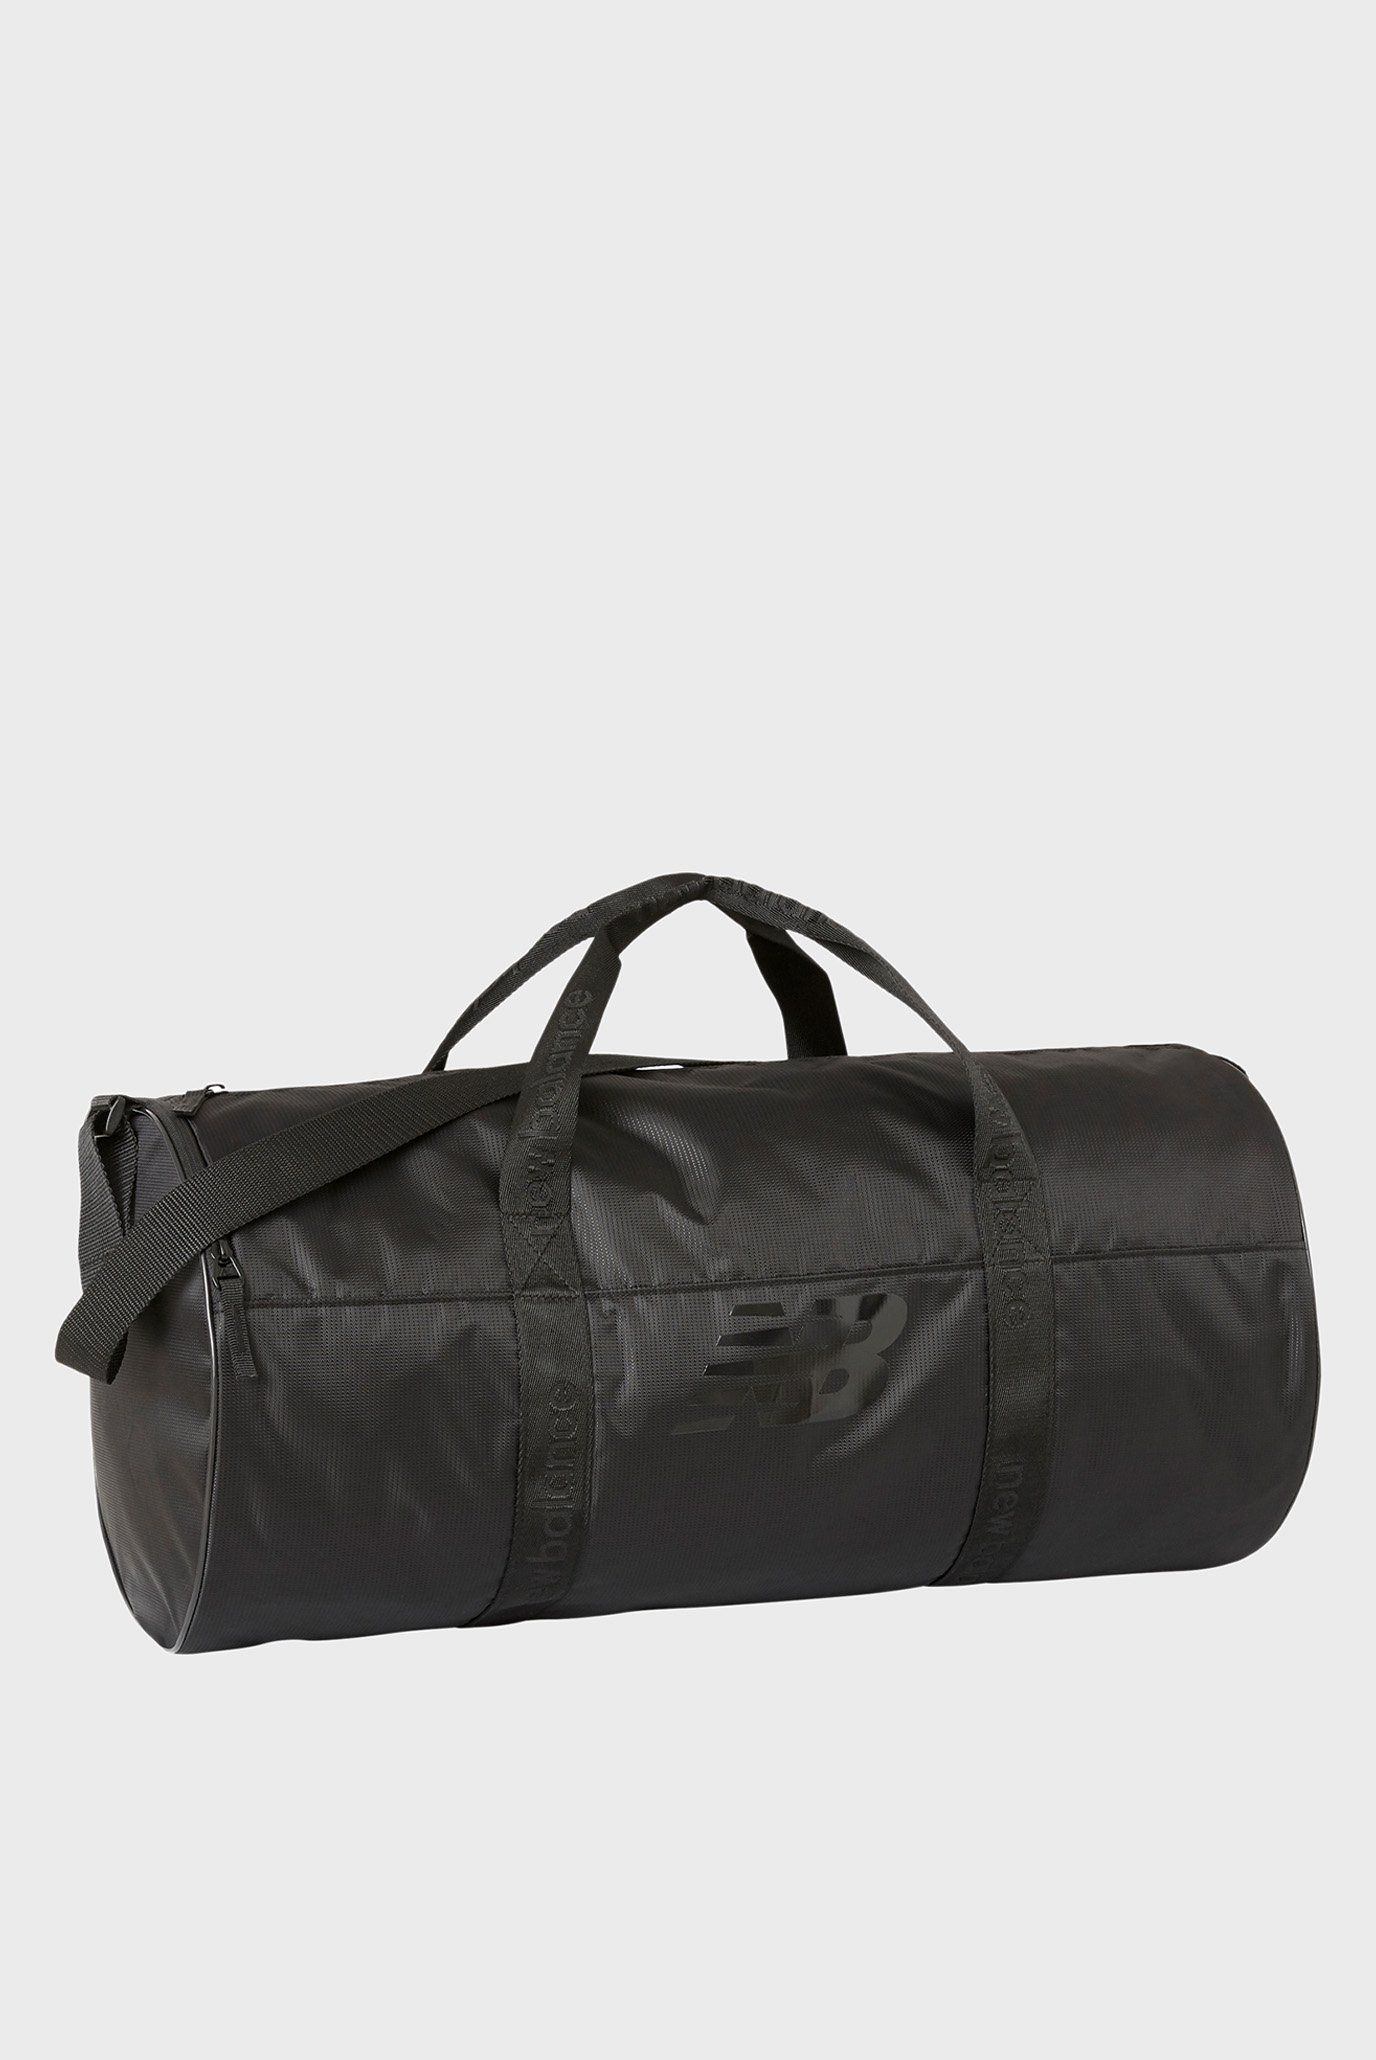 Чорна спортивна сумка Opp Core Medium Duffel 1